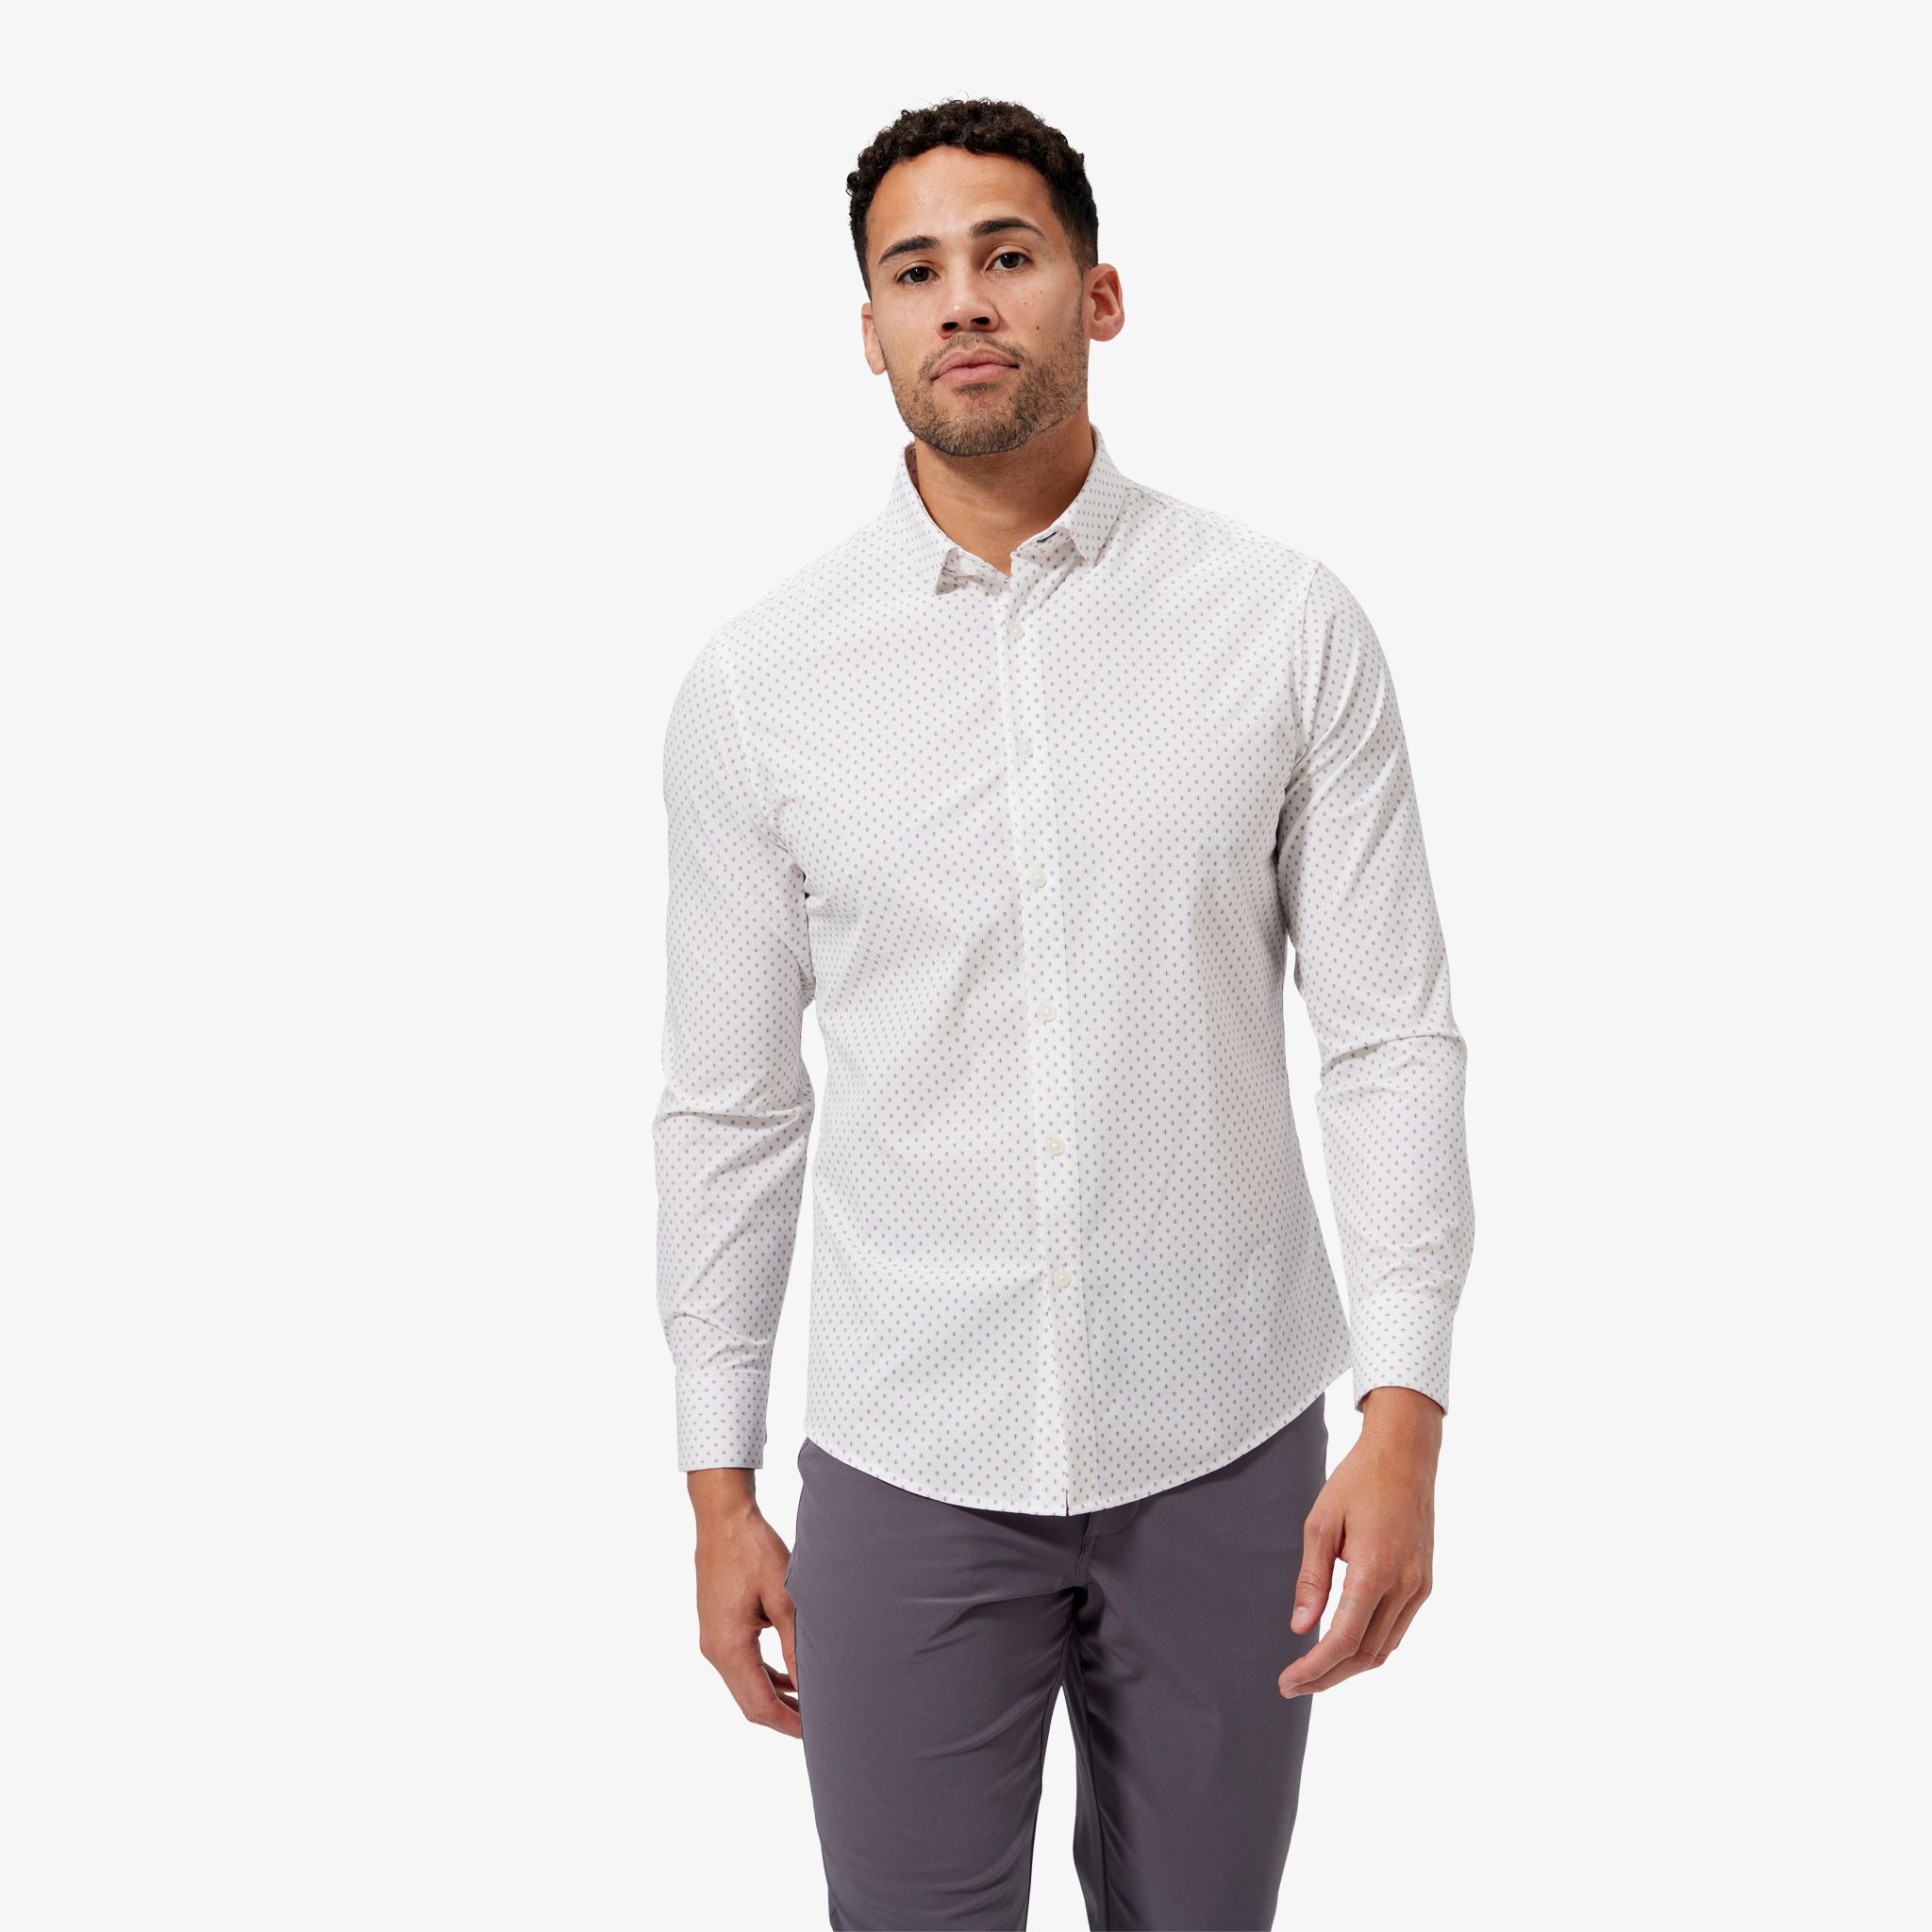 Leeward No Tuck Dress Shirt - White Gray Geo Print